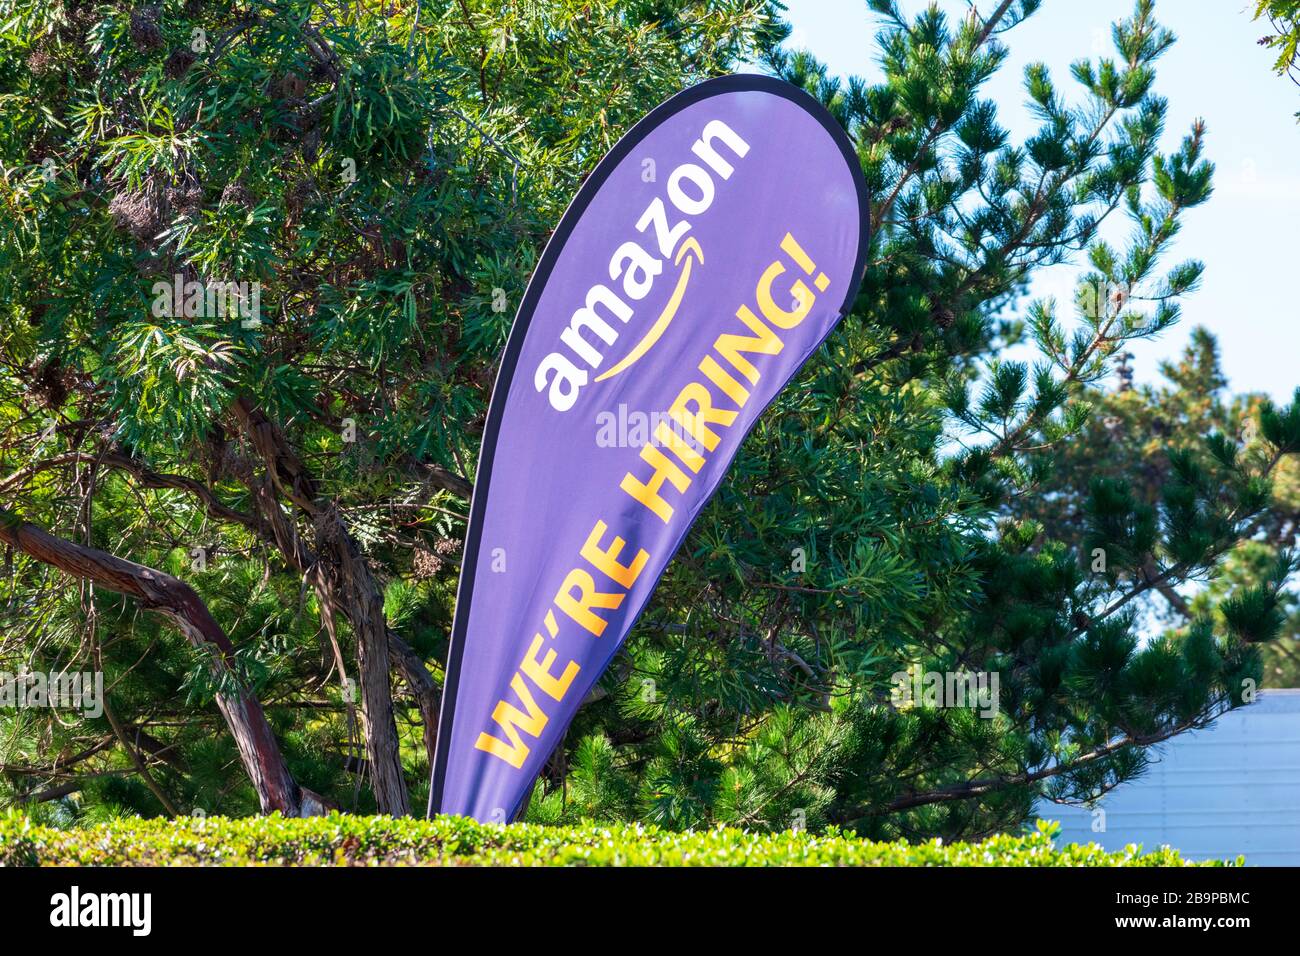 Wir Stellen Ein. Text auf Federfahne Banner Werbung Einstellung von Amazon  Unternehmen im Silicon Valley - Sunnyvale, CA, USA - 2020 Stockfotografie -  Alamy